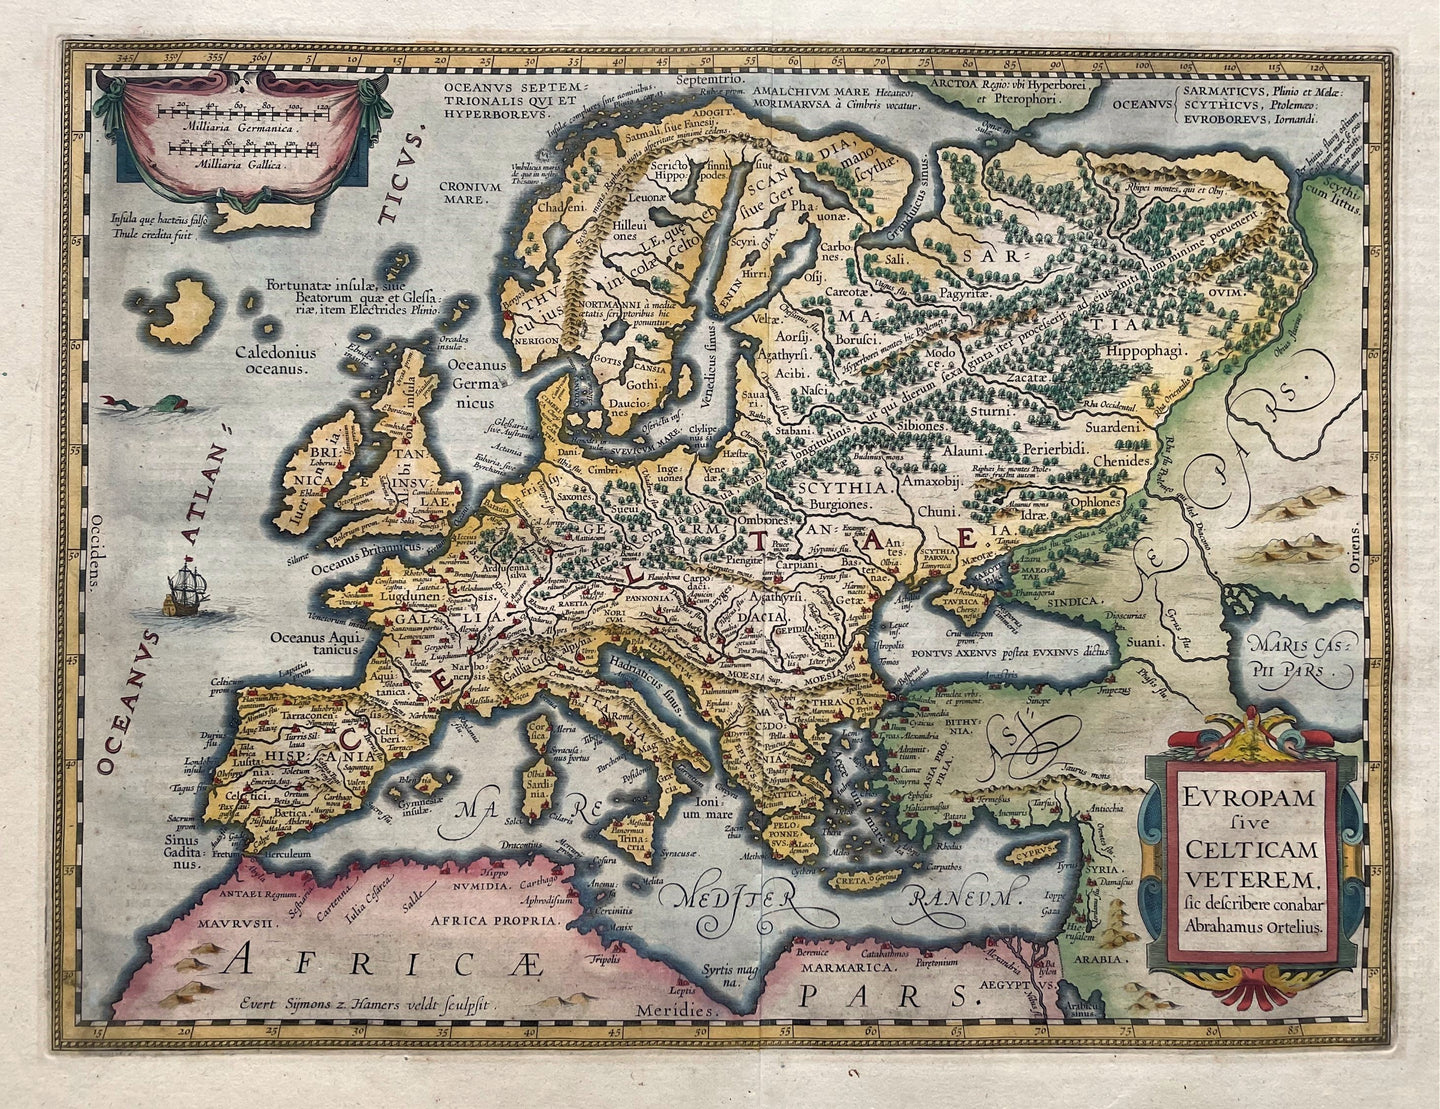 Europa Europam, sive Celticam Veterum - H Hondius / A Ortelius - 1638